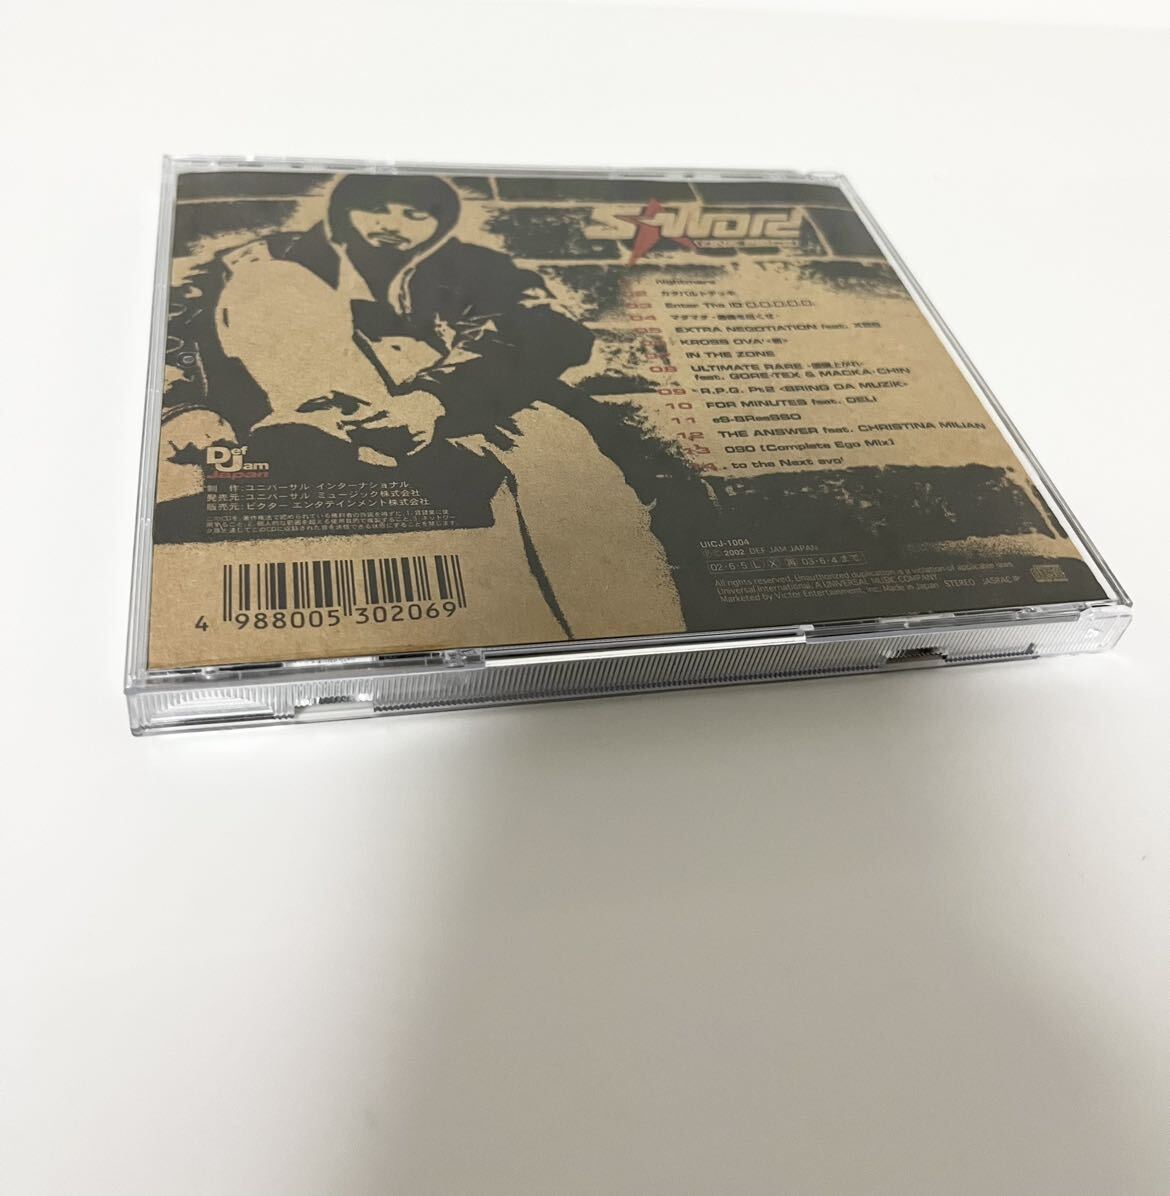 【送料無料・即決】S-WORD / ONE PIECE CD NITRO MICROPHONE UNDERGROUND HIPHOP 日本語ラップ ヒップホップ アルバム デフ ジャム def jam